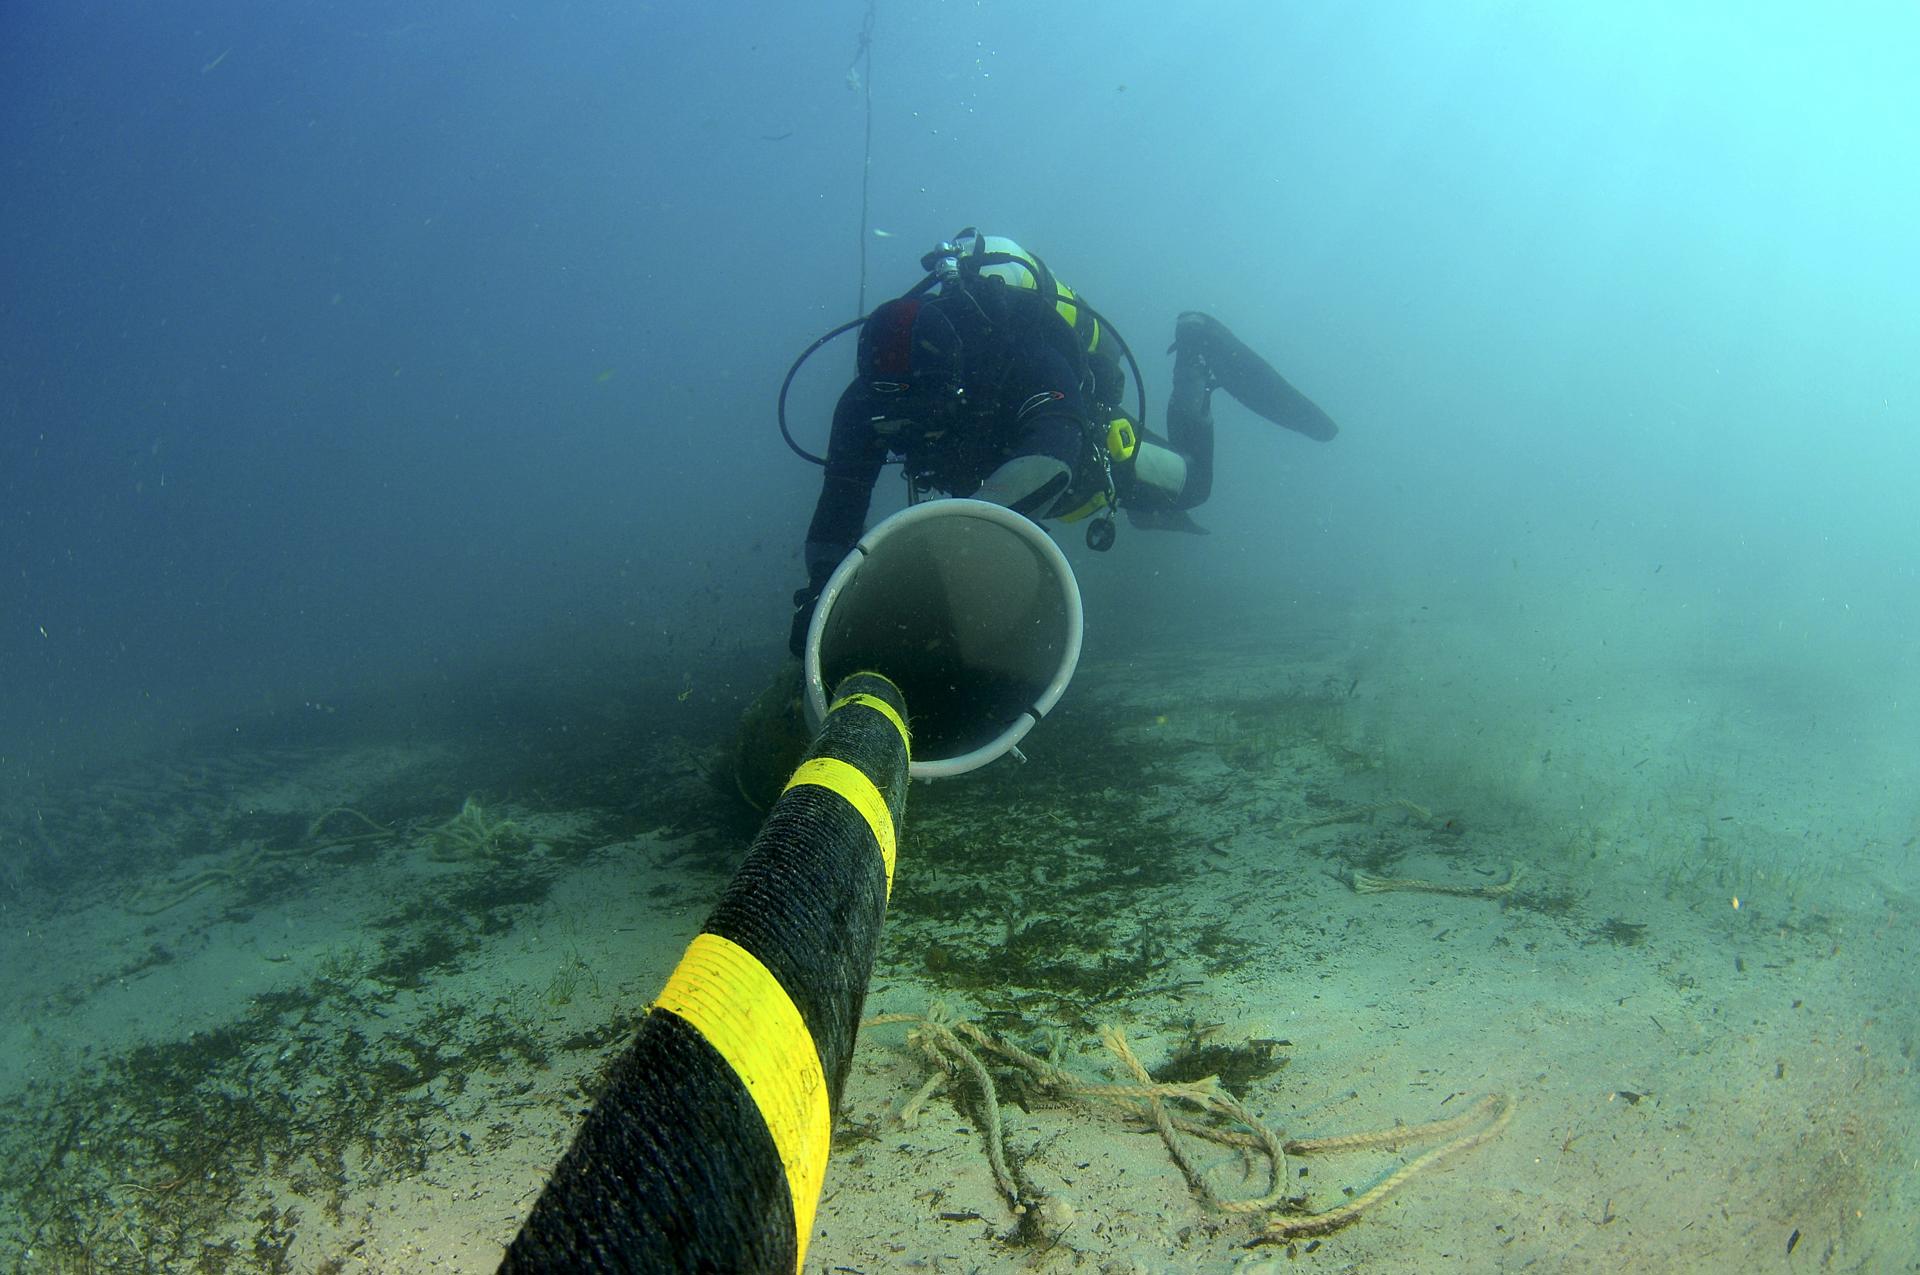 Cortan cuatro cables submarinos de telecomunicaciones en el Mar Rojo